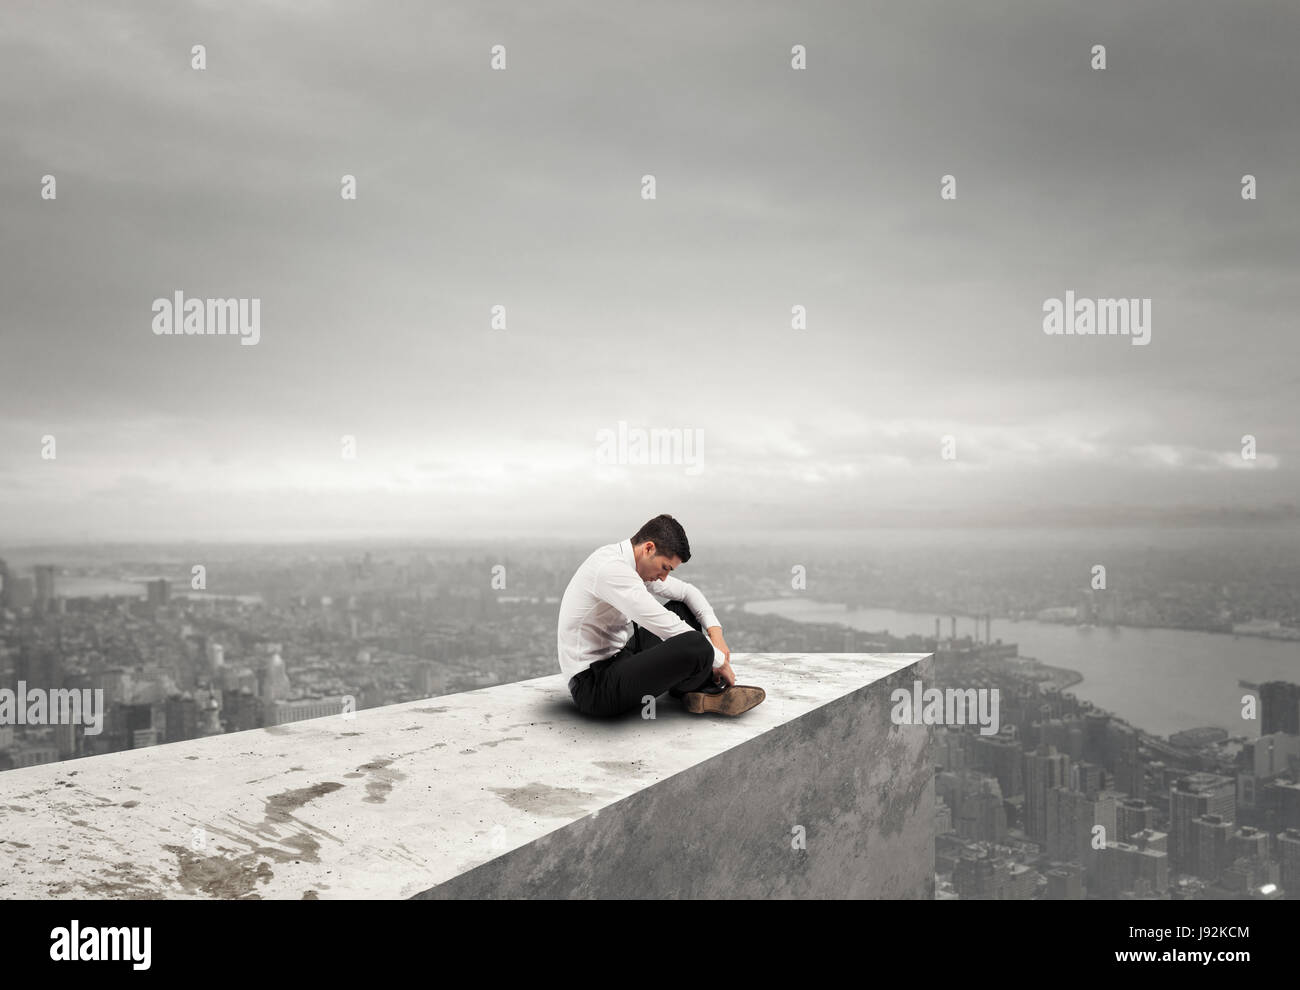 Alone desperate businessman. solitude and failure concept Stock Photo